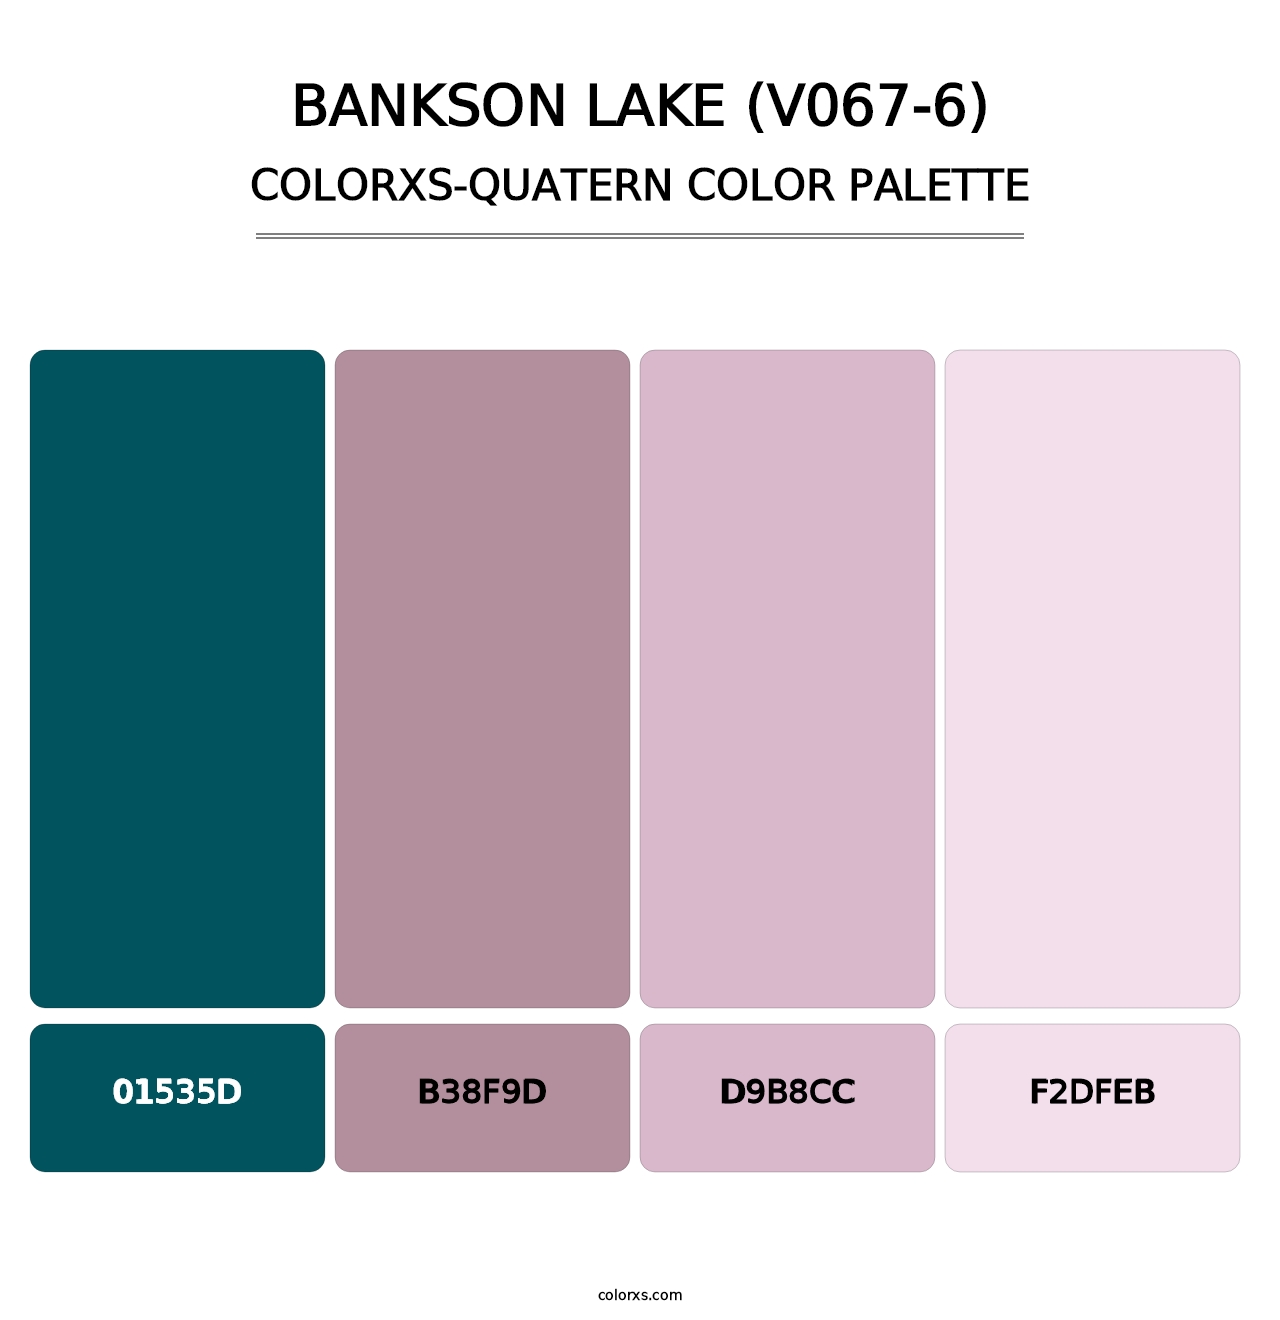 Bankson Lake (V067-6) - Colorxs Quatern Palette